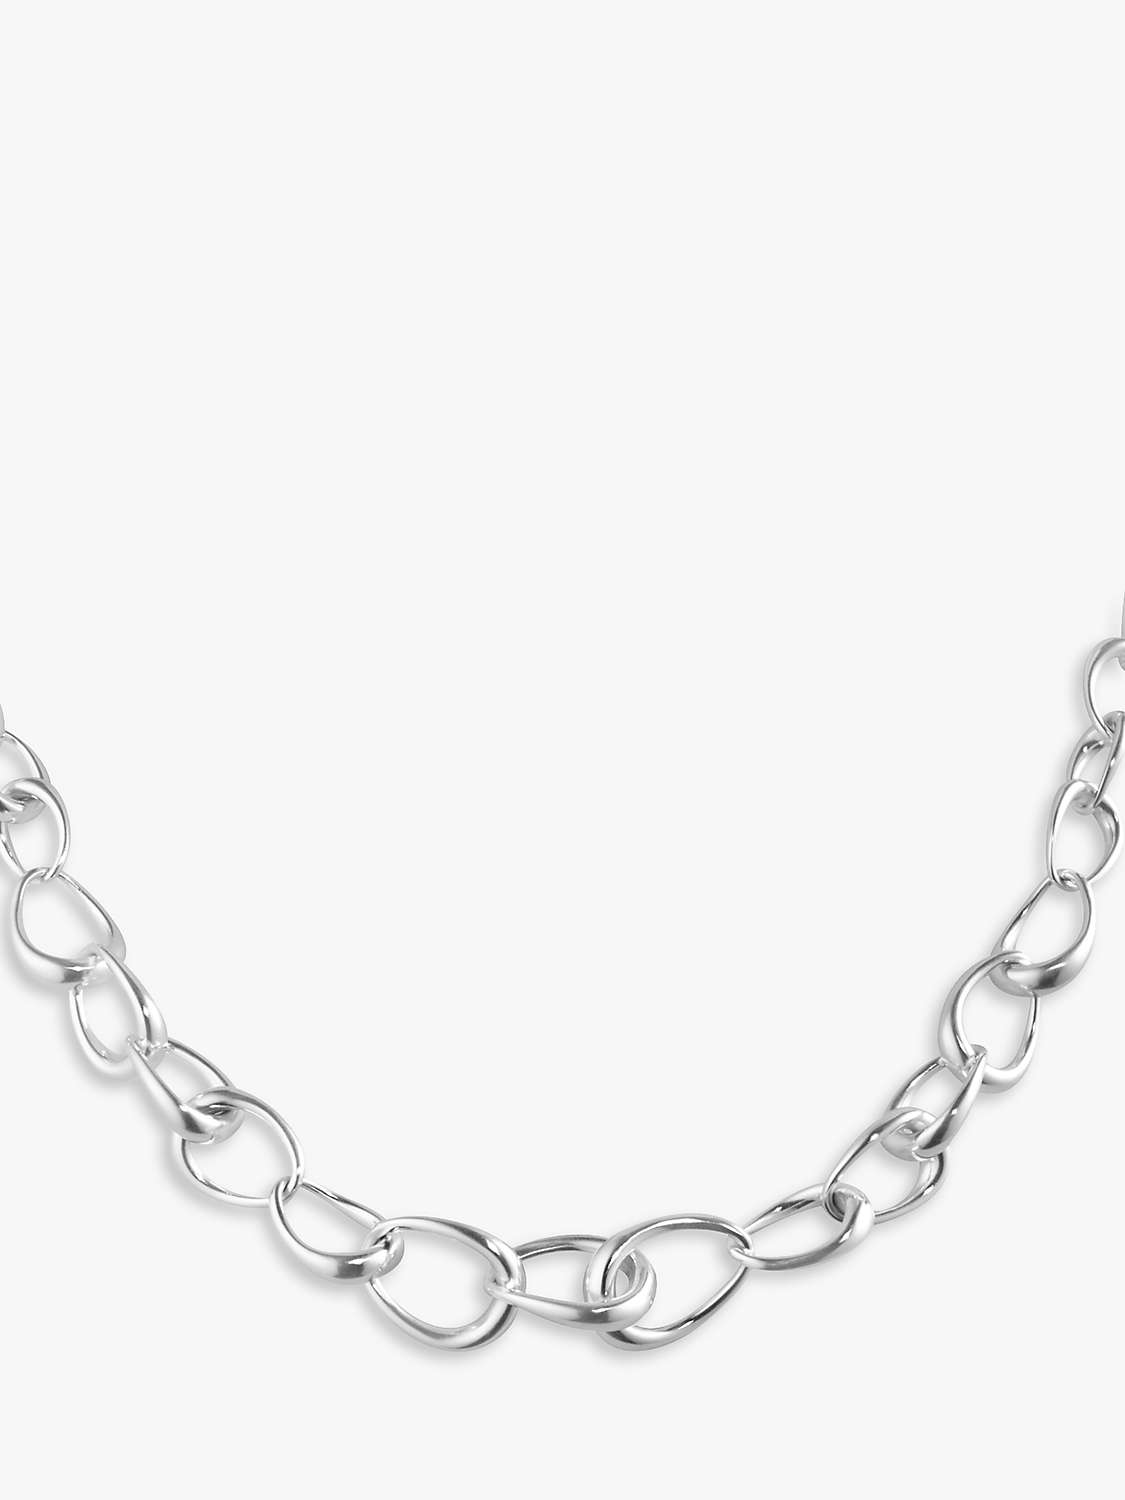 Buy Georg Jensen Offspring Oval Link Necklace, Silver Online at johnlewis.com